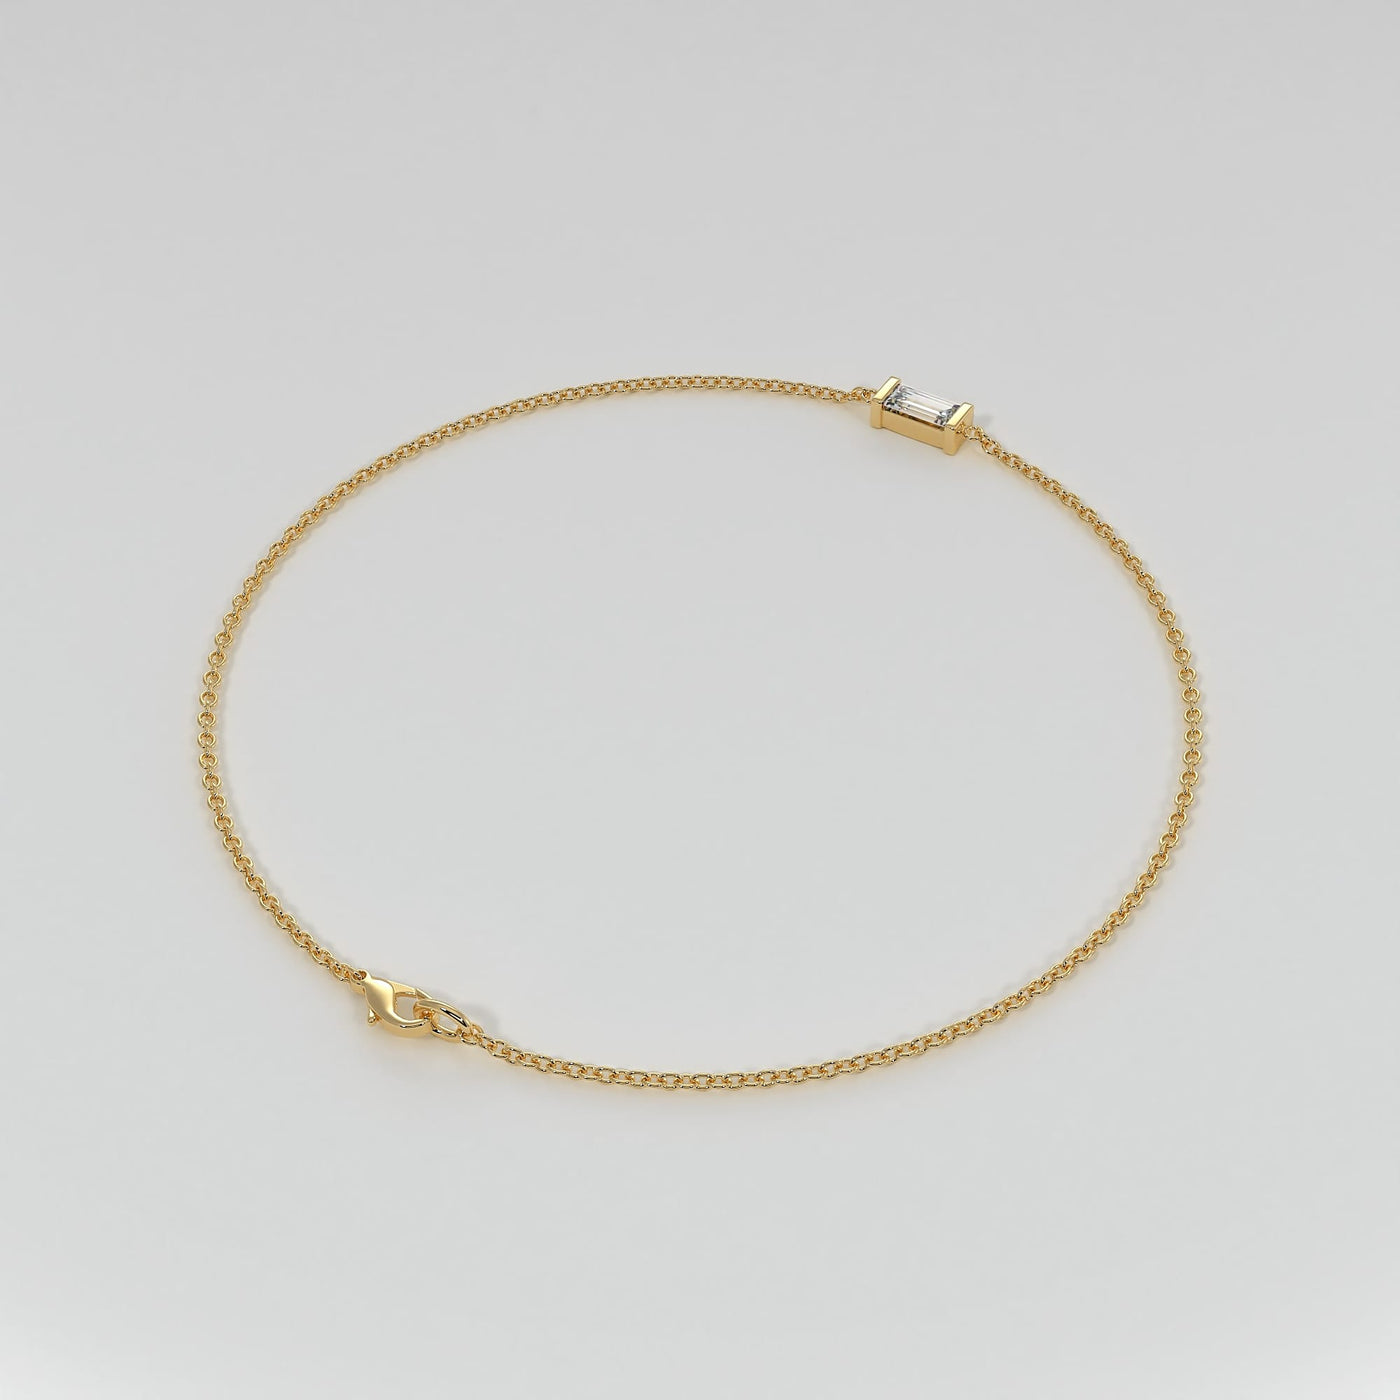 Diamond Bracelet In Yellow Gold Designed by FANCI Bespoke Fine Jewellery